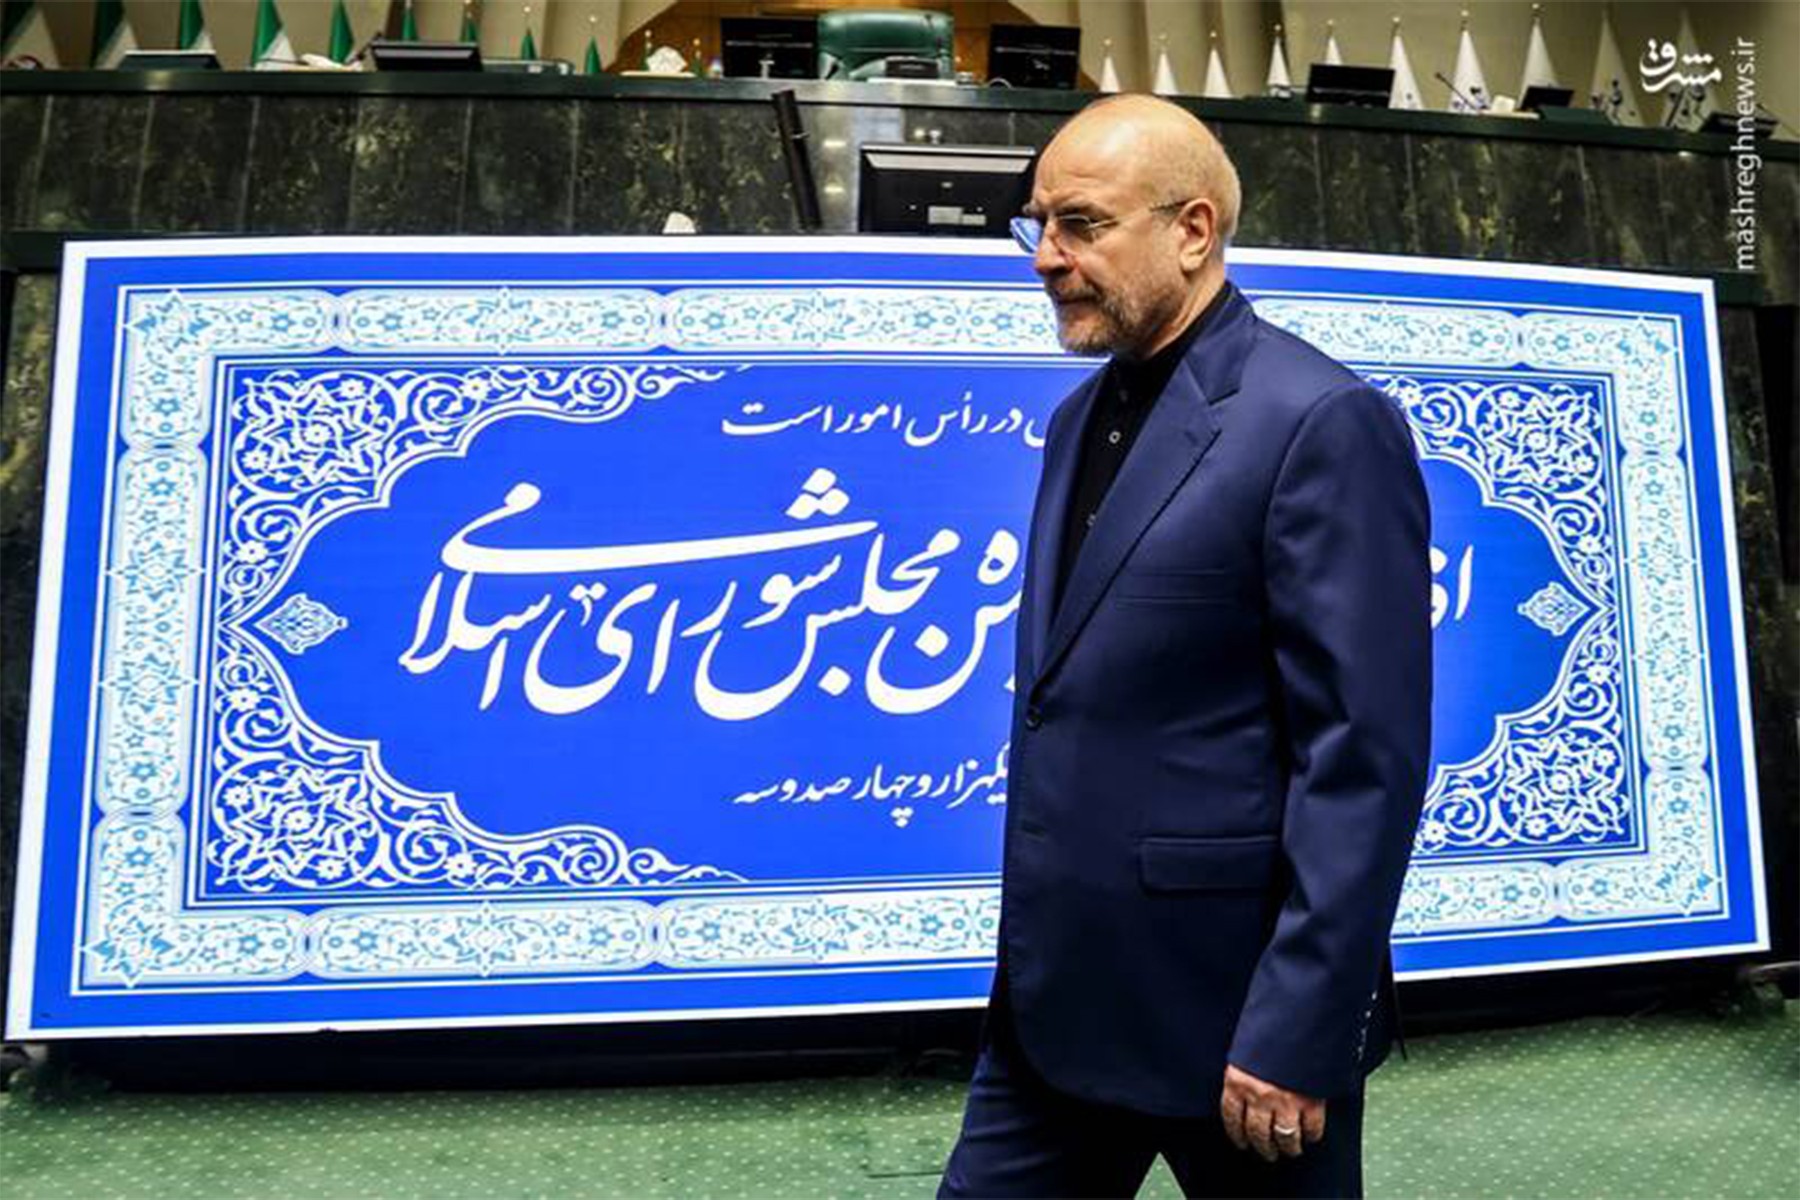 دوازدهمین دوره مجلس شورای اسلامی صبح دوشنبه هفتم خرداد شروع به کار کرد